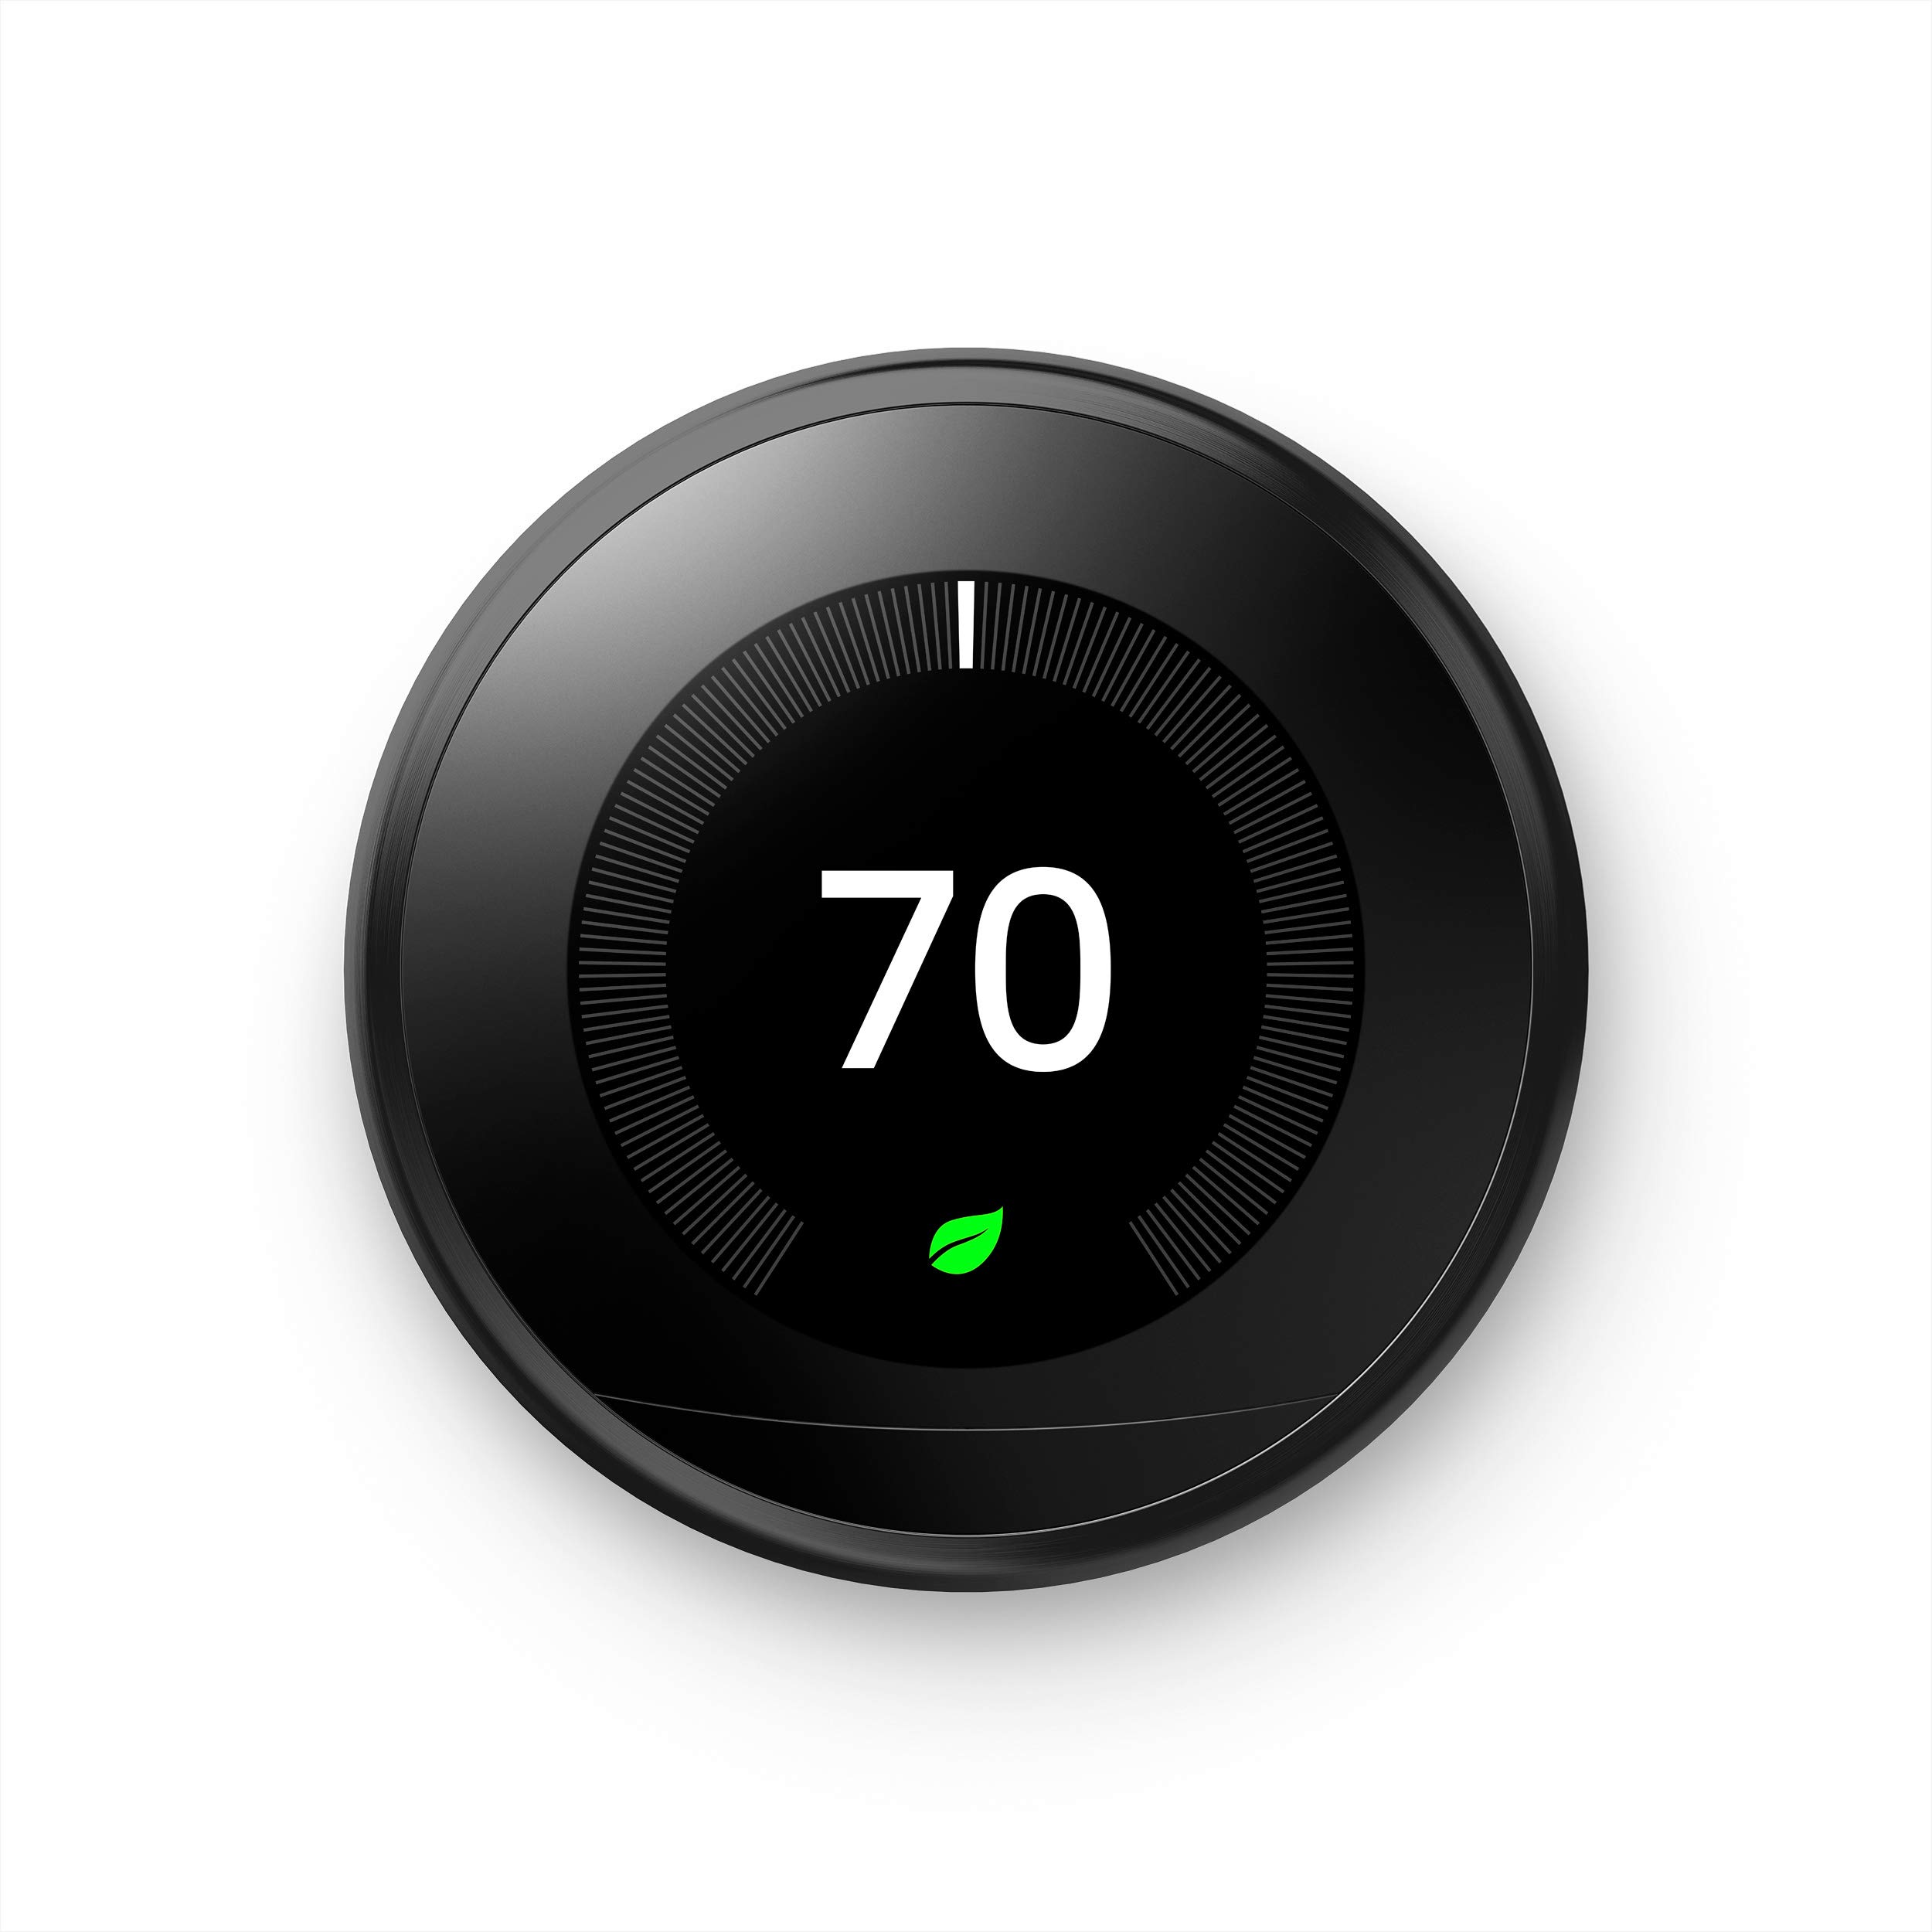 Google Termostat Nest Learning — programowalny inteligentny termostat do domu — termostat Nest trzeciej generacji — kompatybilny z Alexą